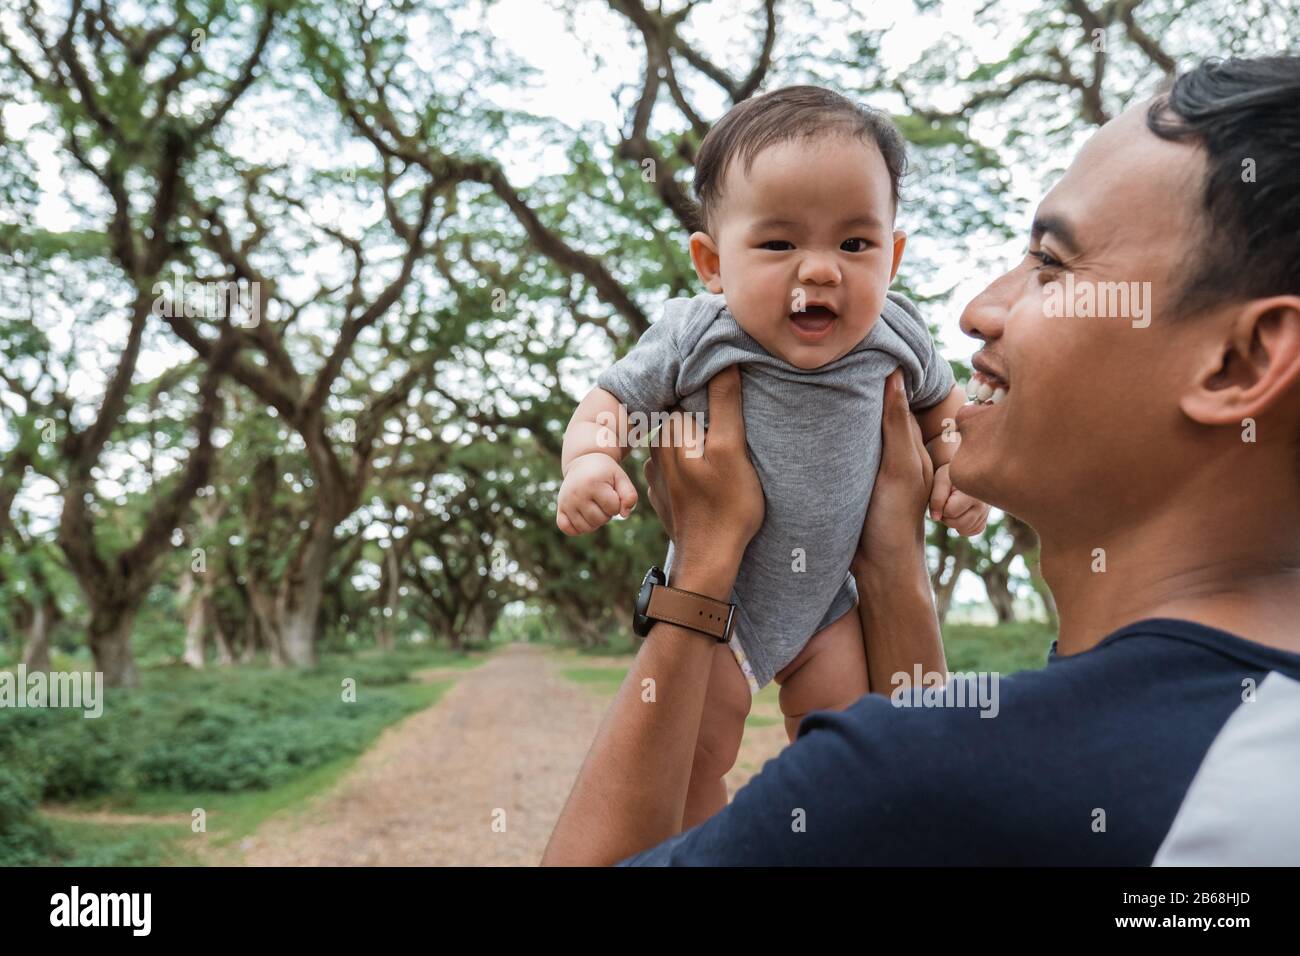 Vater lacht, während er ein Baby festhält, während er gemeinsam Urlaub macht Stockfoto